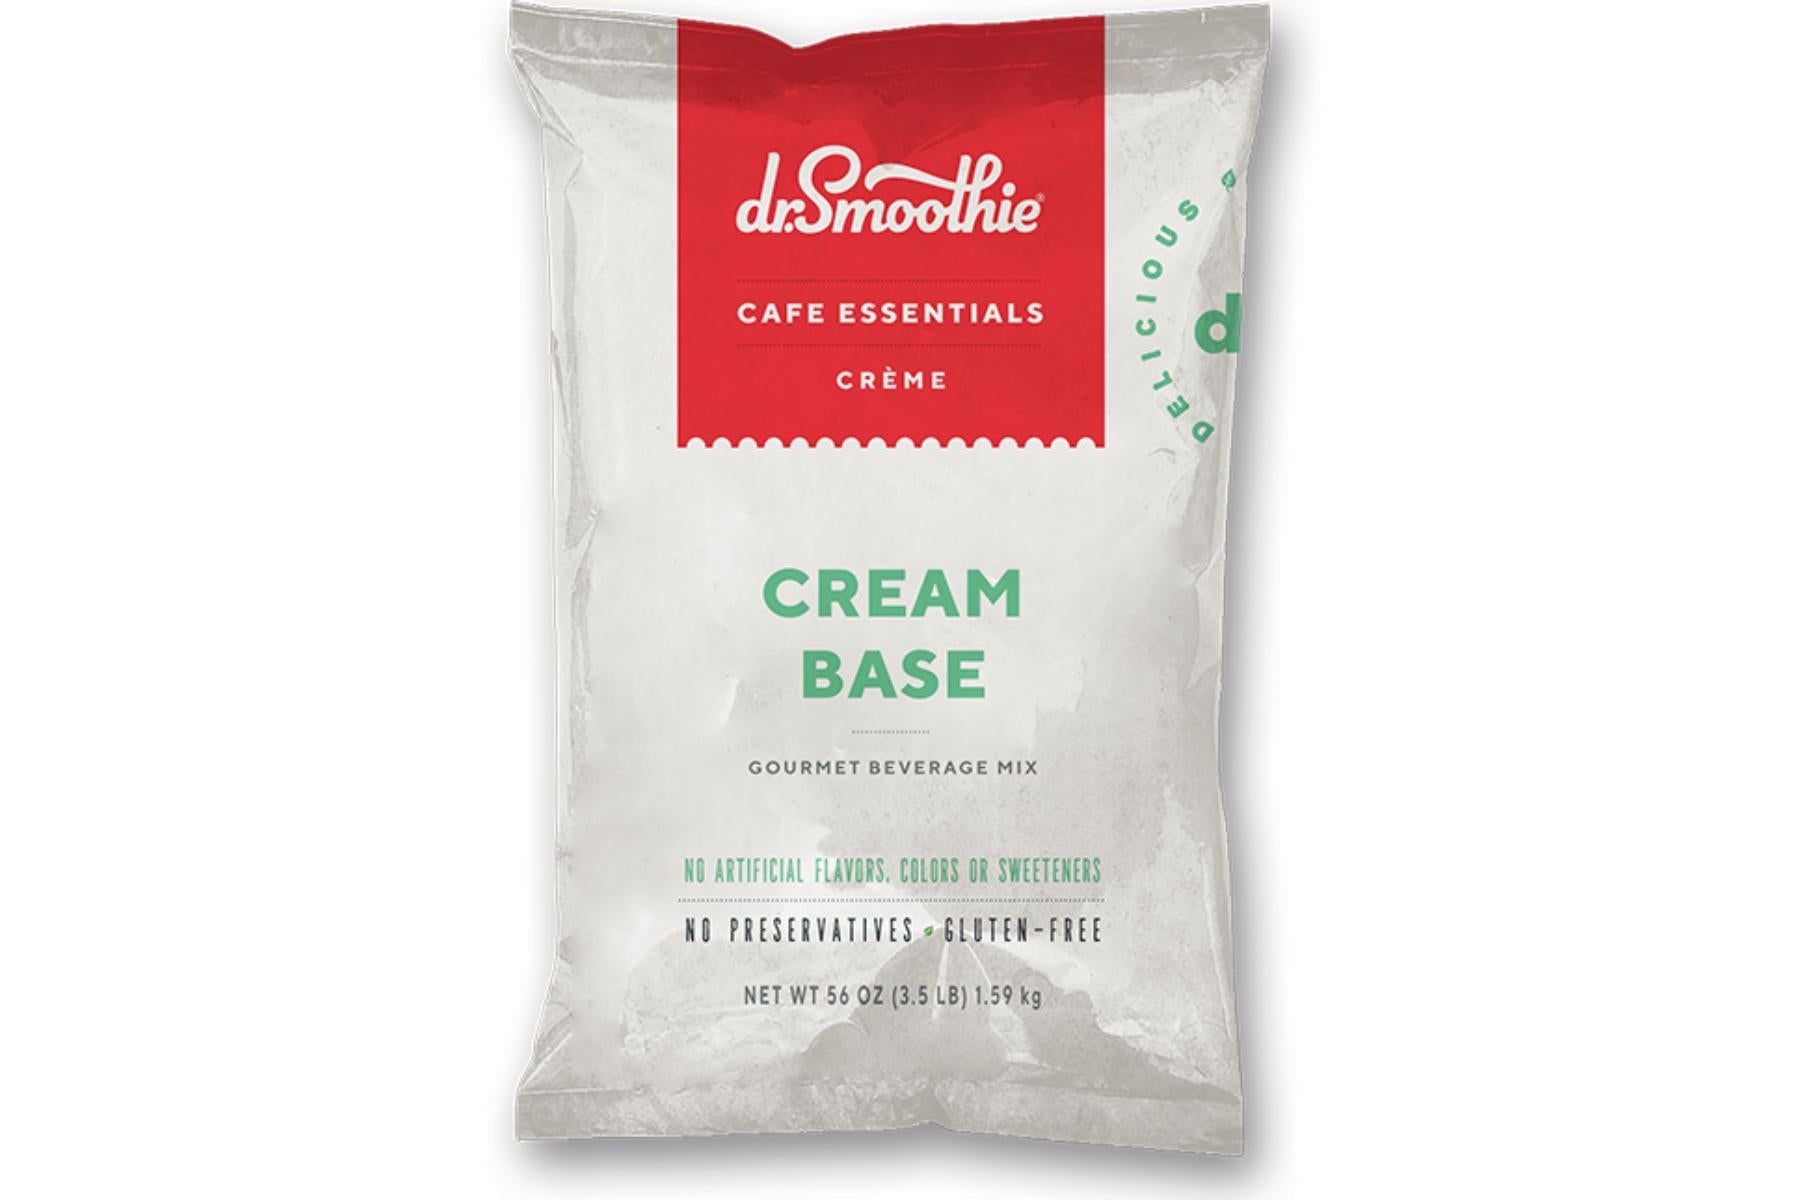 Dr. Smoothie Cafe Essentials Creme - 25lb Bulk Box: Cream Base